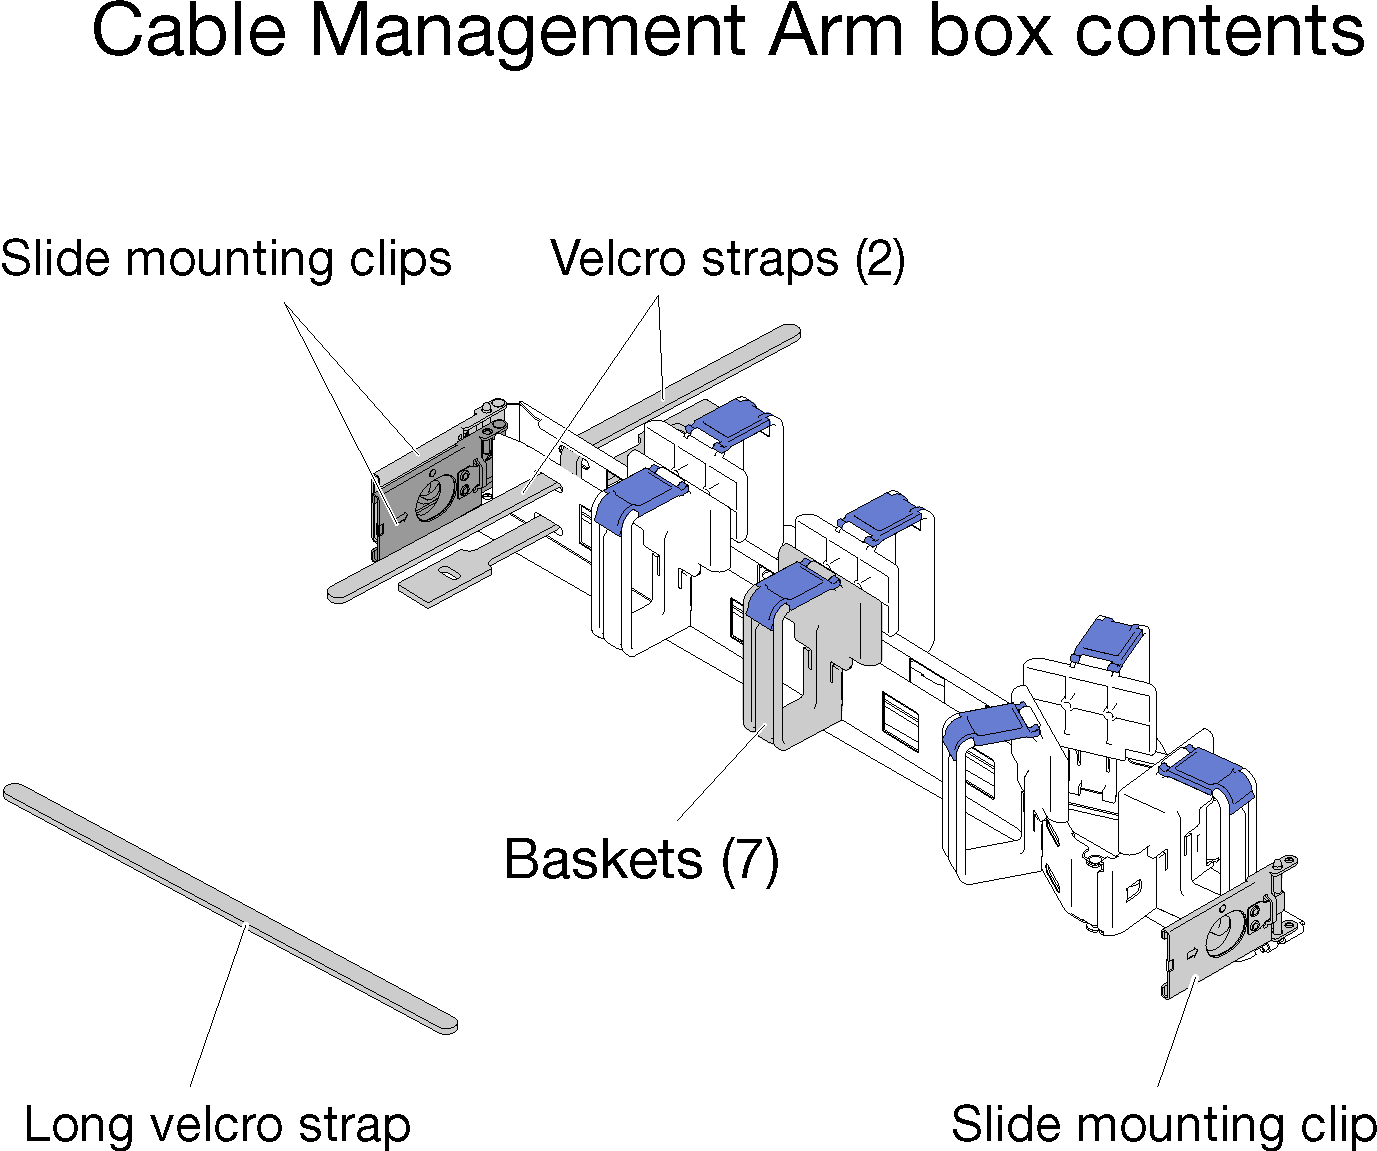 Cable management arm box contents